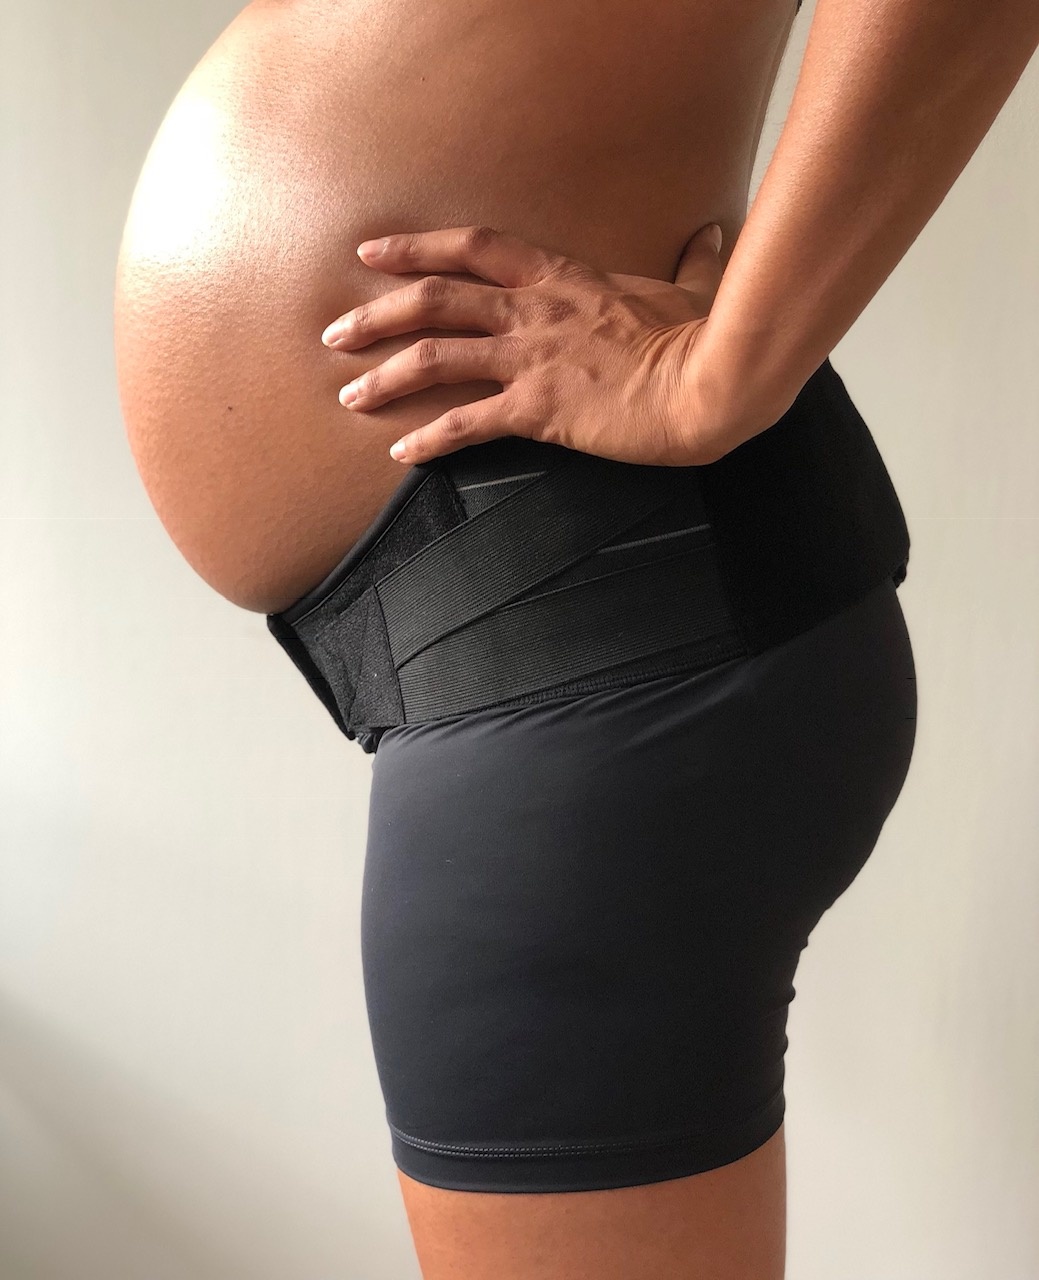 Mama Strut Maternity Brace System - Amma Boutique